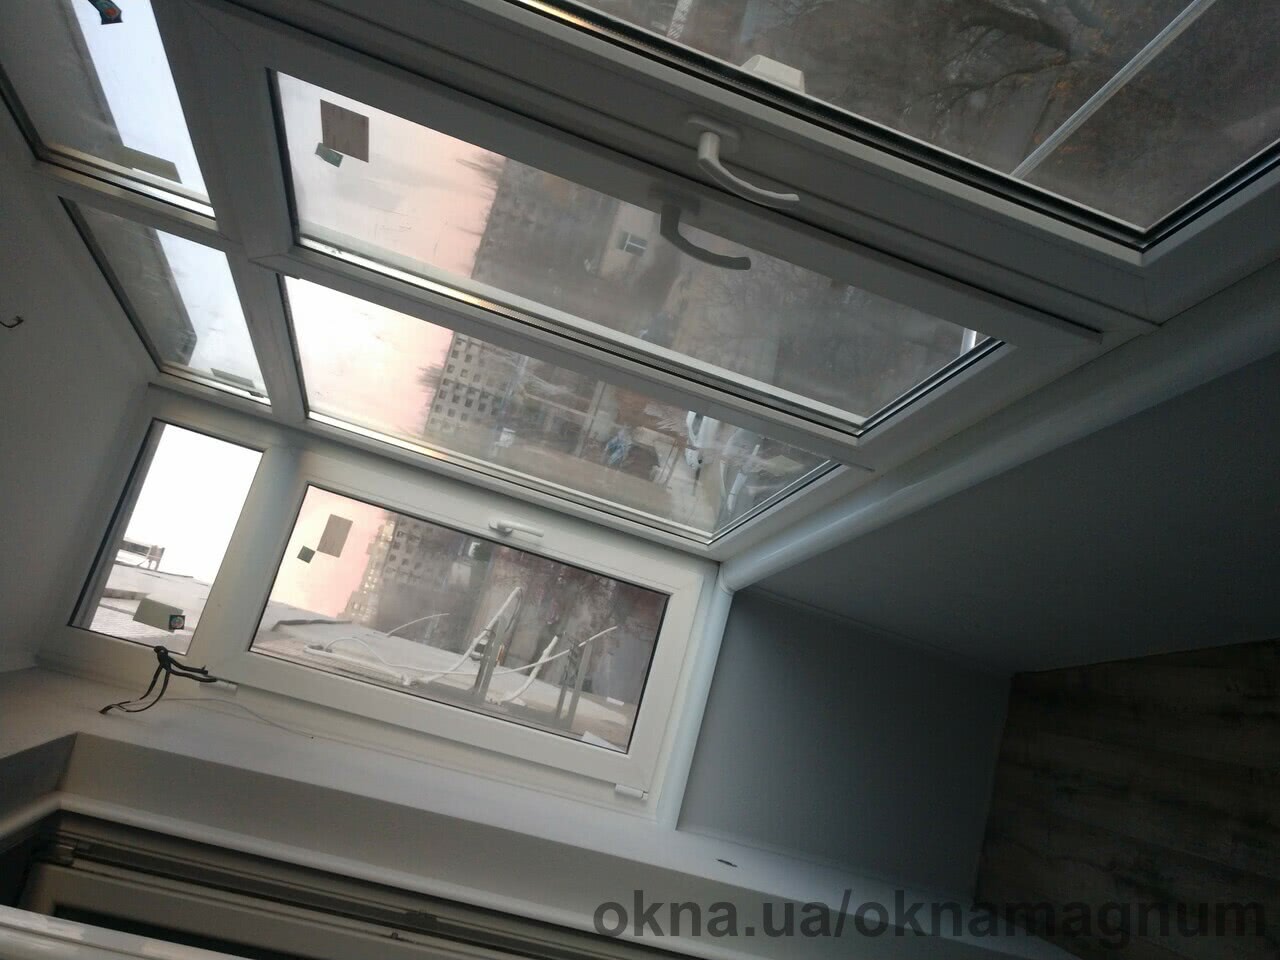 Проведено успішний монтаж балкона з двокамерними мультифункціональними склопакетами